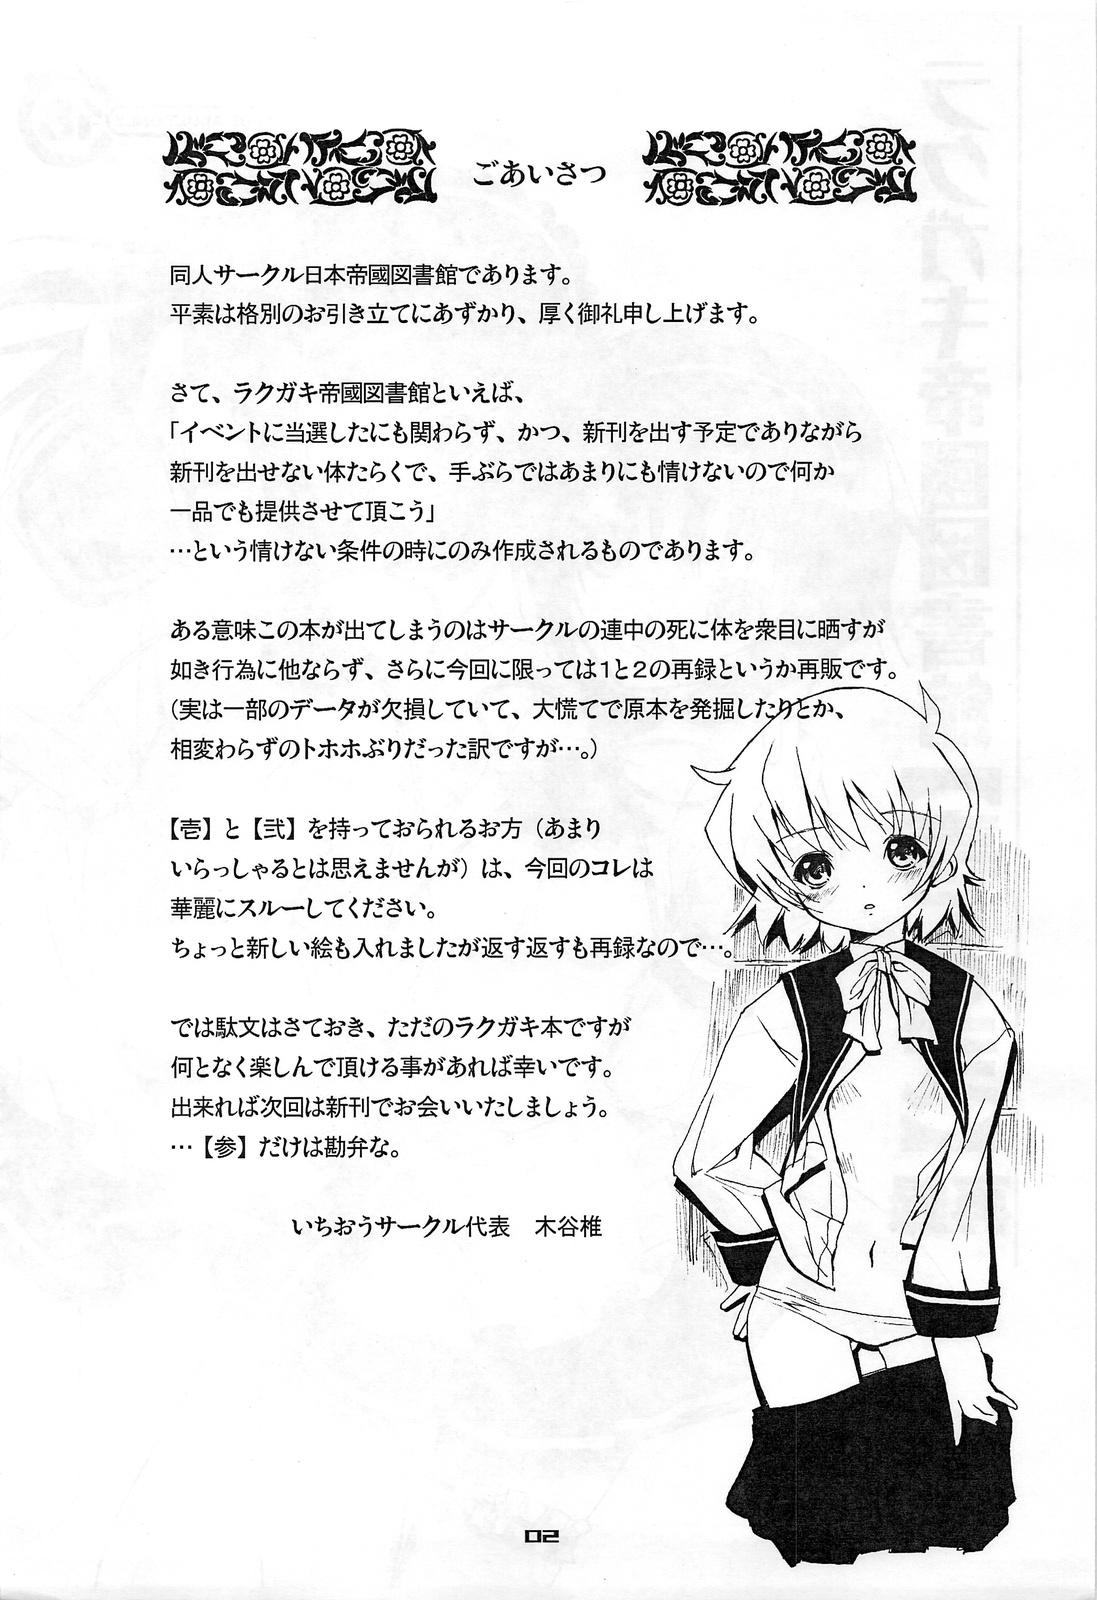 Fisting Rakugaki Teikoku Toshokan "Ichi to Ni" Sairoku Celebrity - Page 2